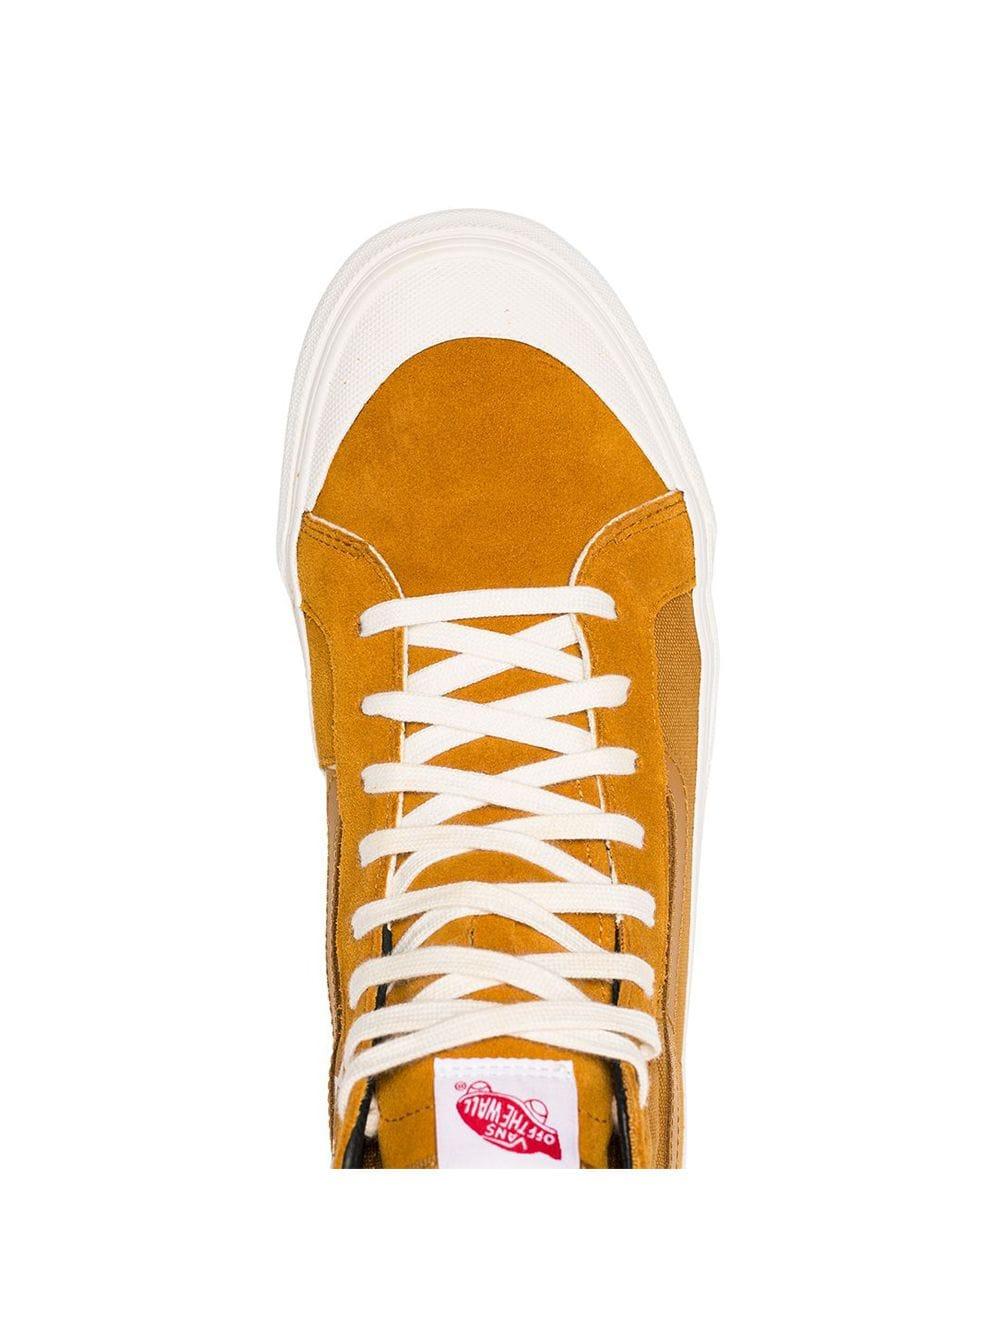 Vans Mustard Yellow Og Style 138 Hi-top Suede Sneakers for Men | Lyst